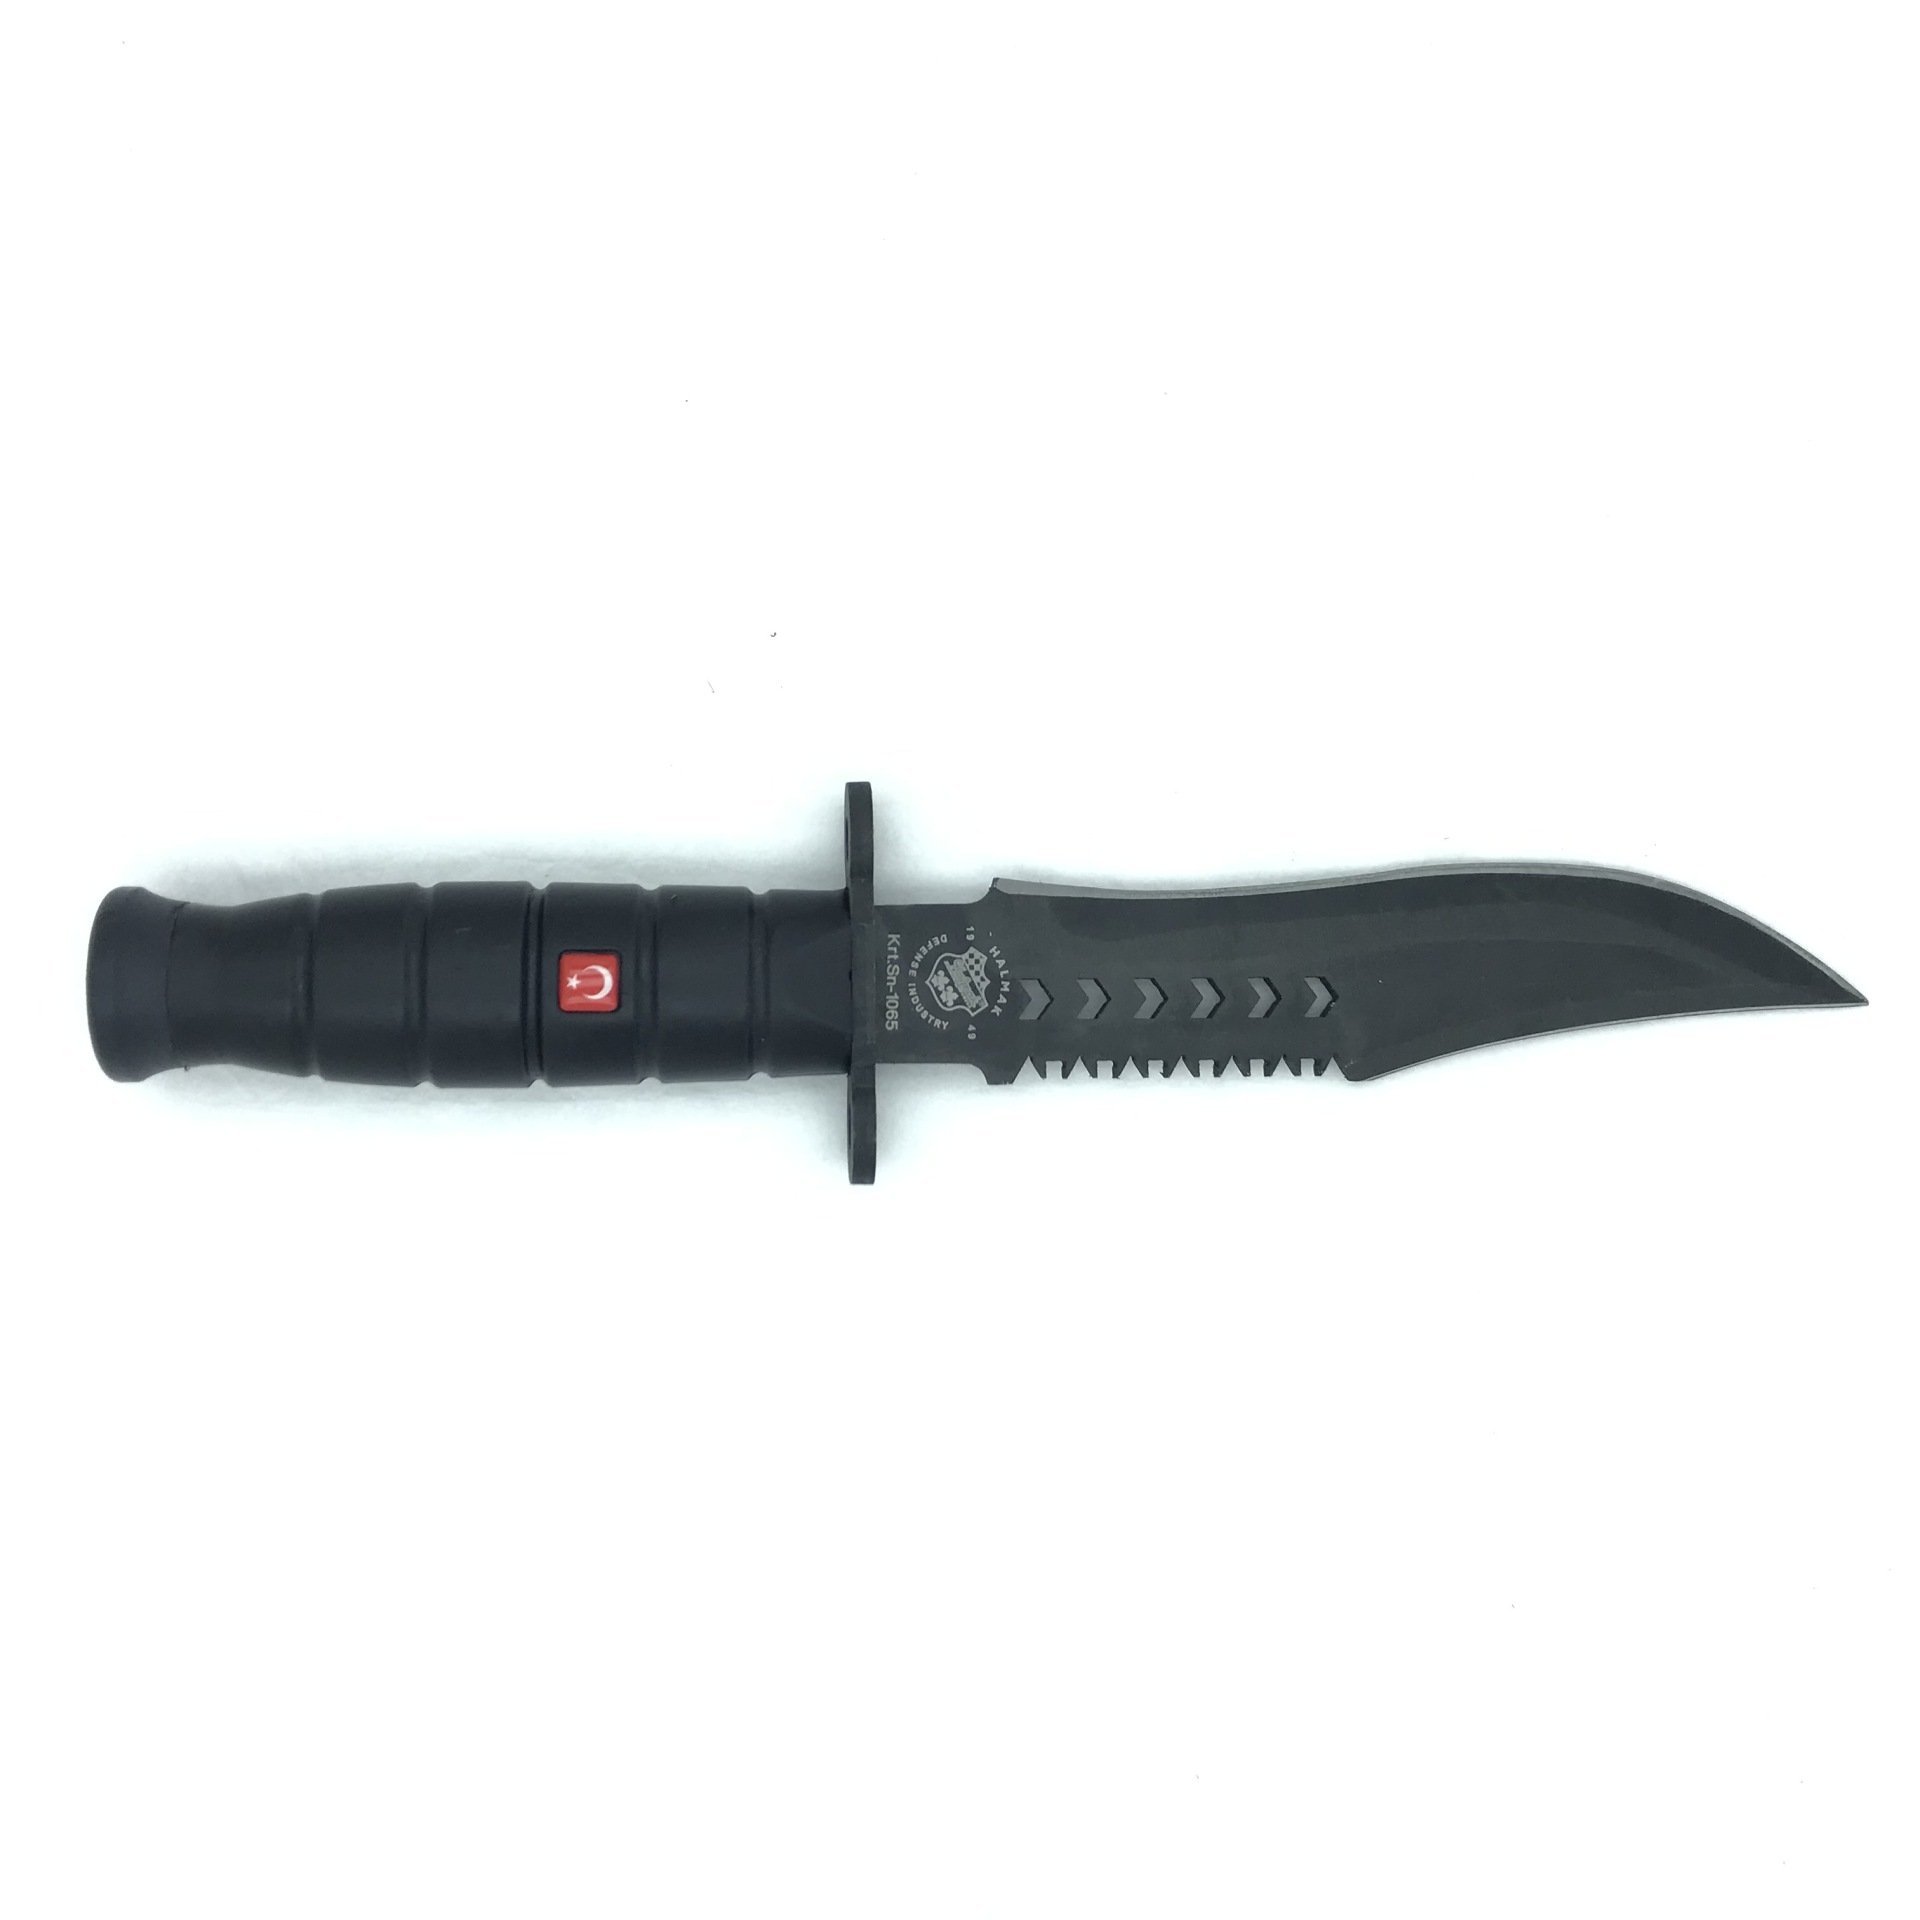 Halmak Siyah Delikli Model Komando ve Av Bıçağı